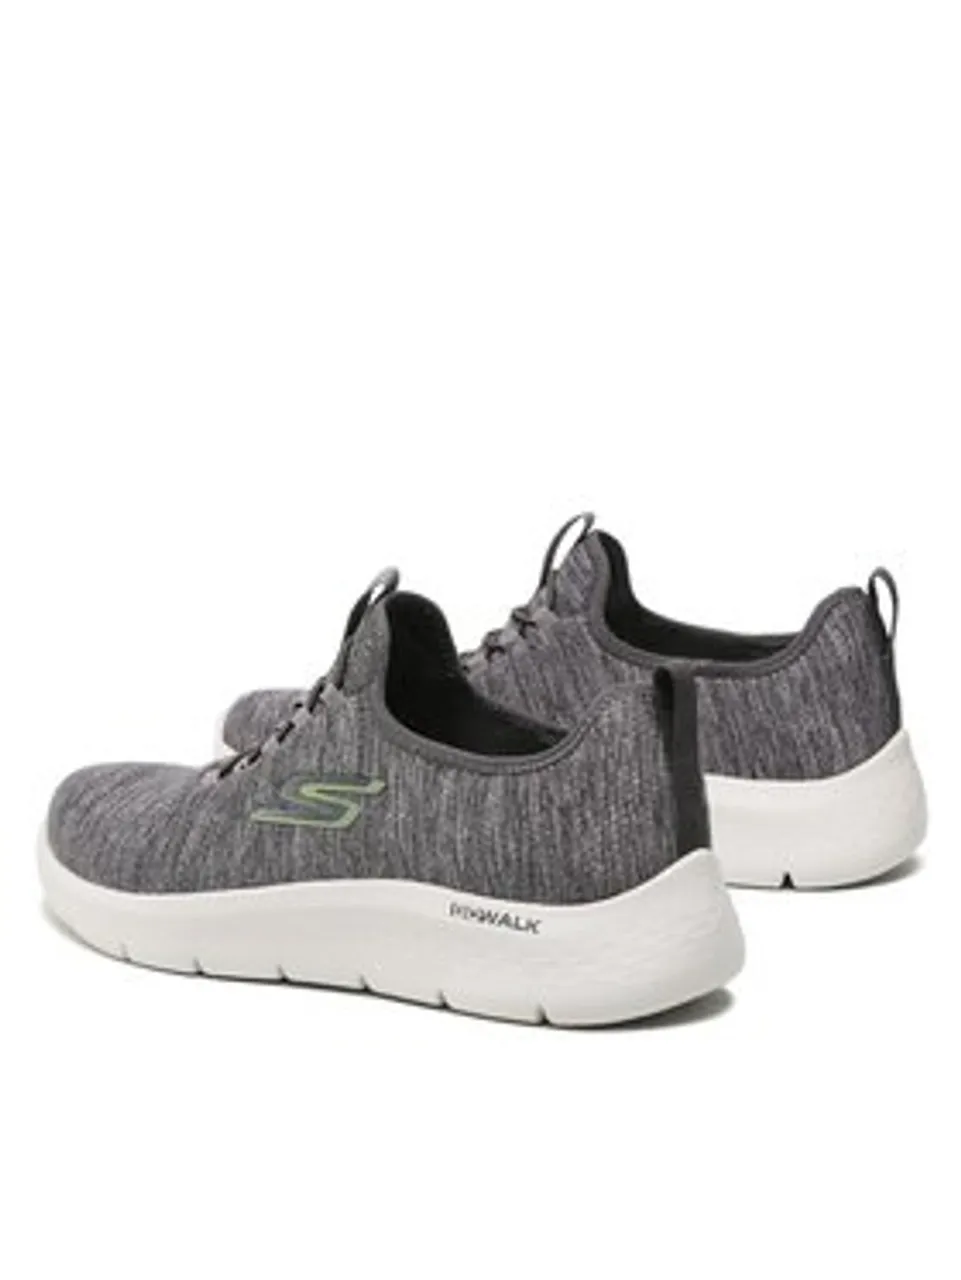 Skechers Sneakers Go Walk Flex 216484/GYLM Grau